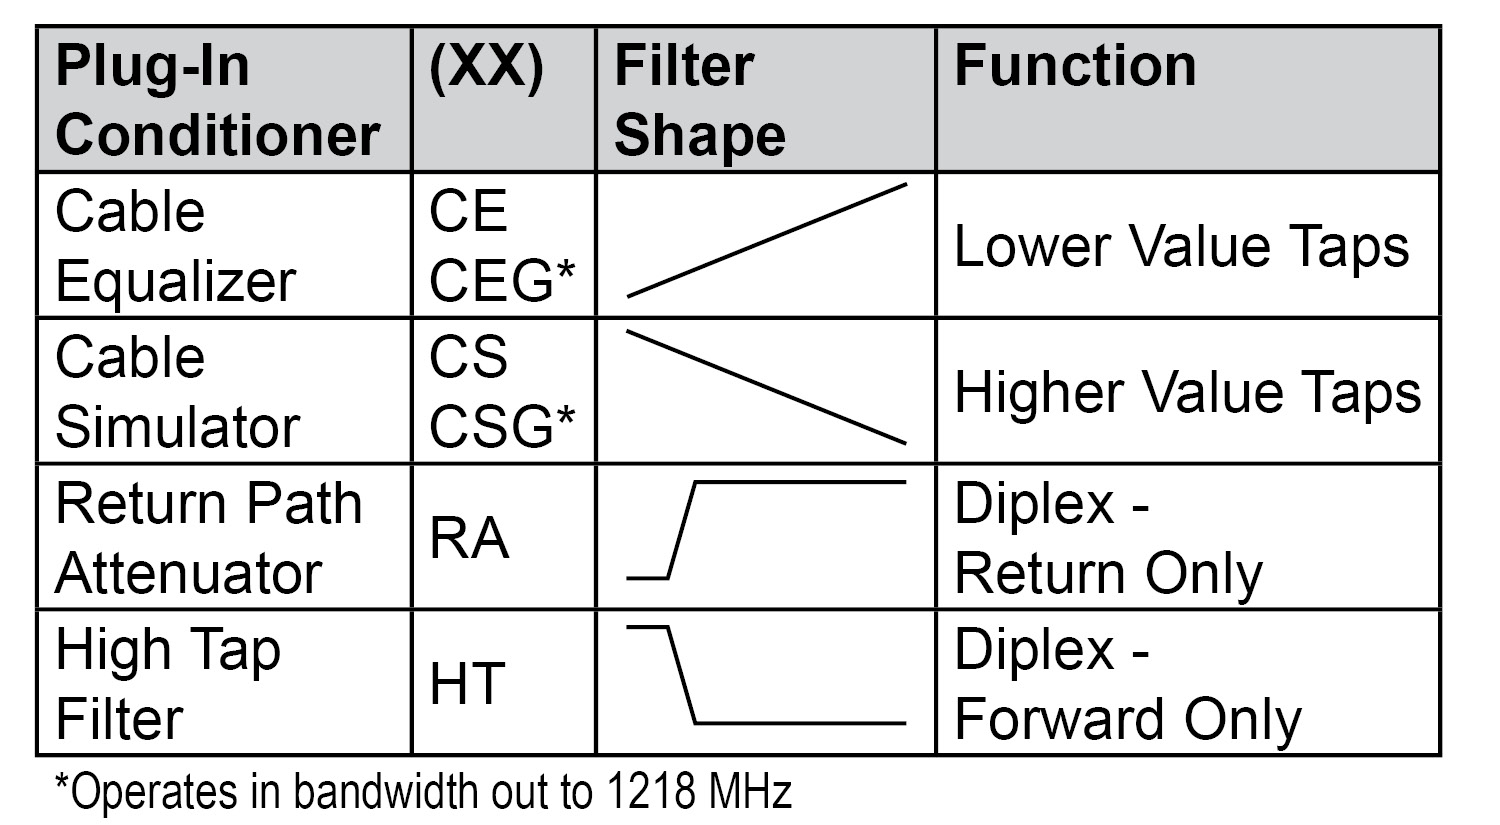 E-Option plug-in conditioner chart